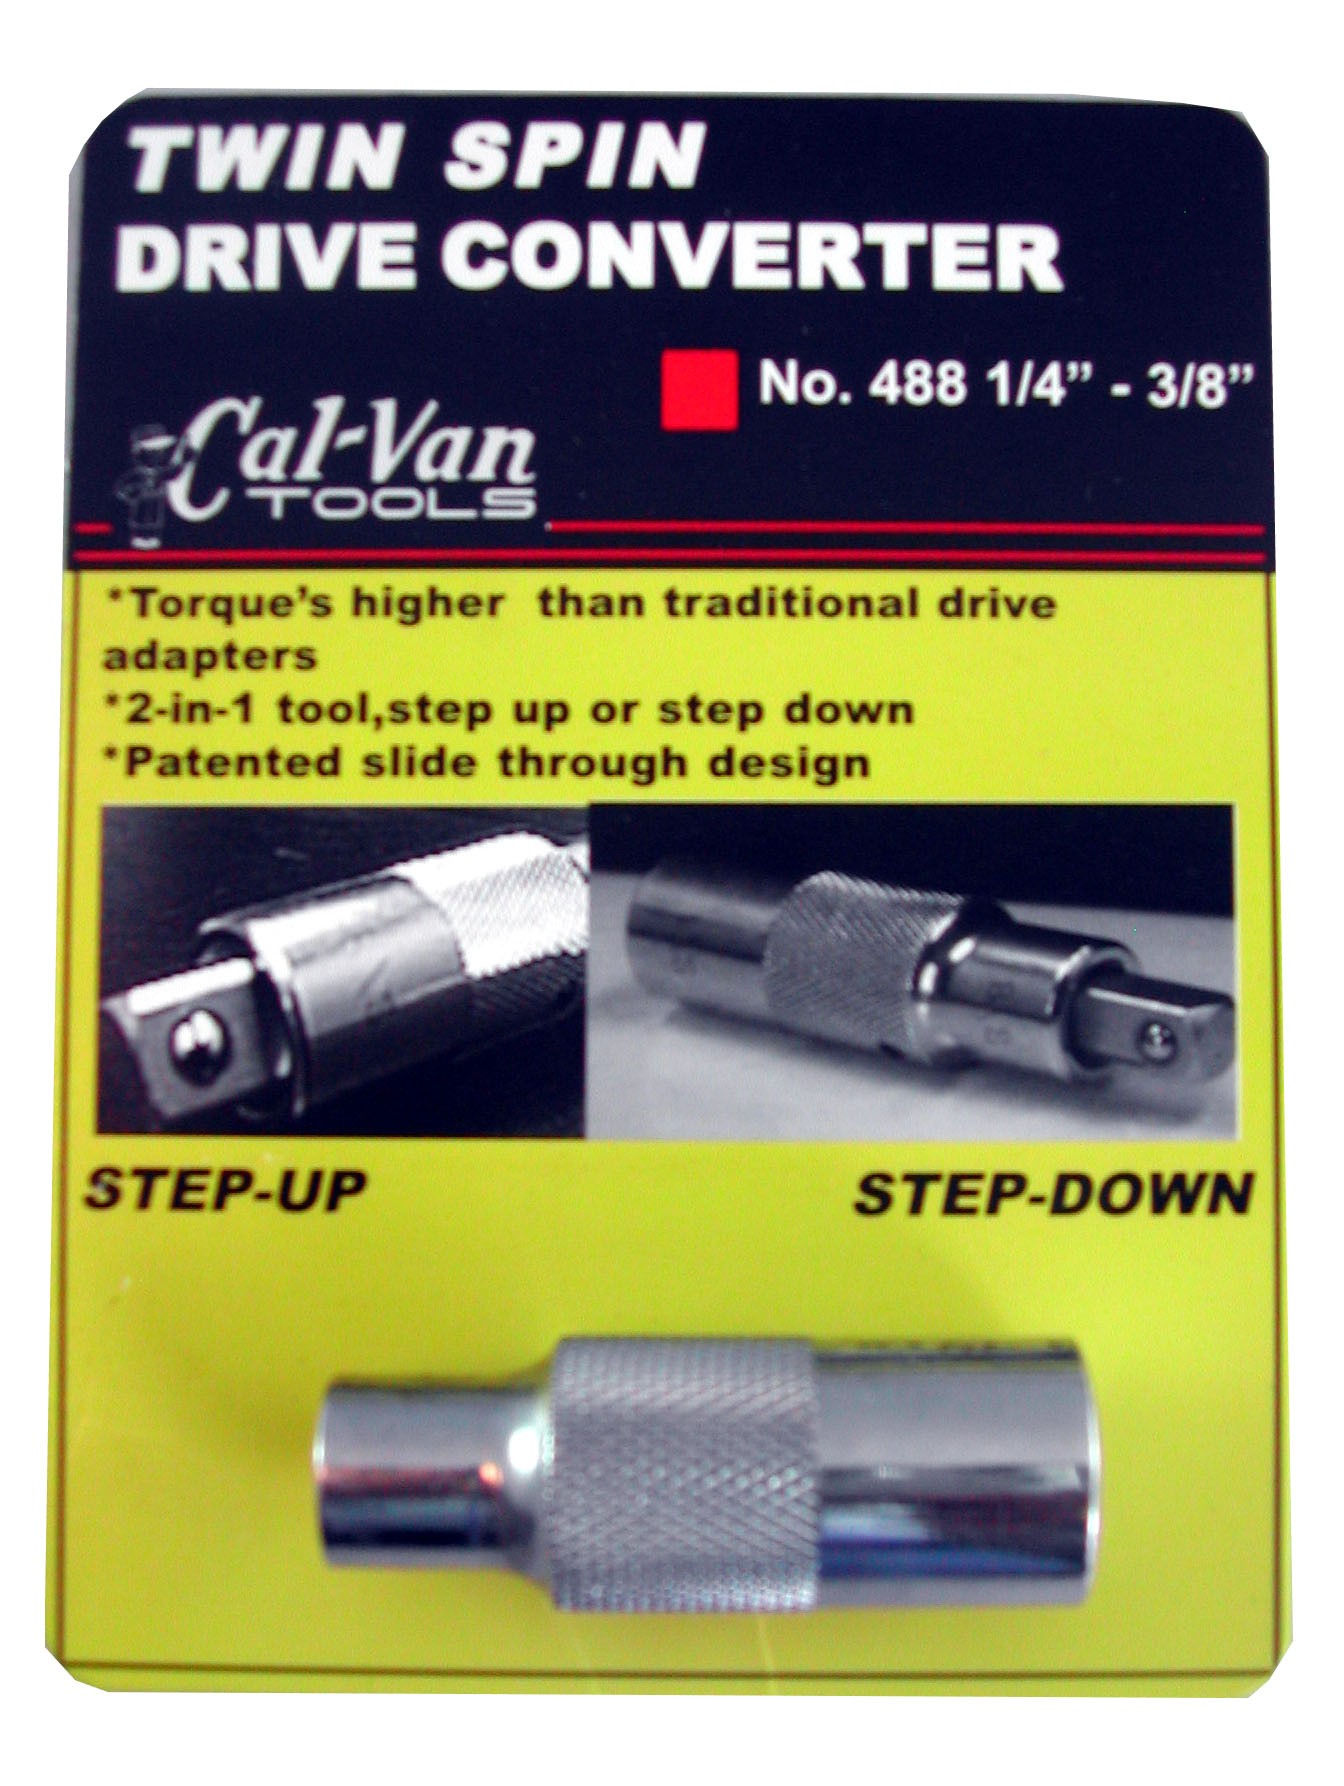 CALVAN TOOLS TWIN SPIN DRIVE CONVERTER 1/4 - 3/8" CV488